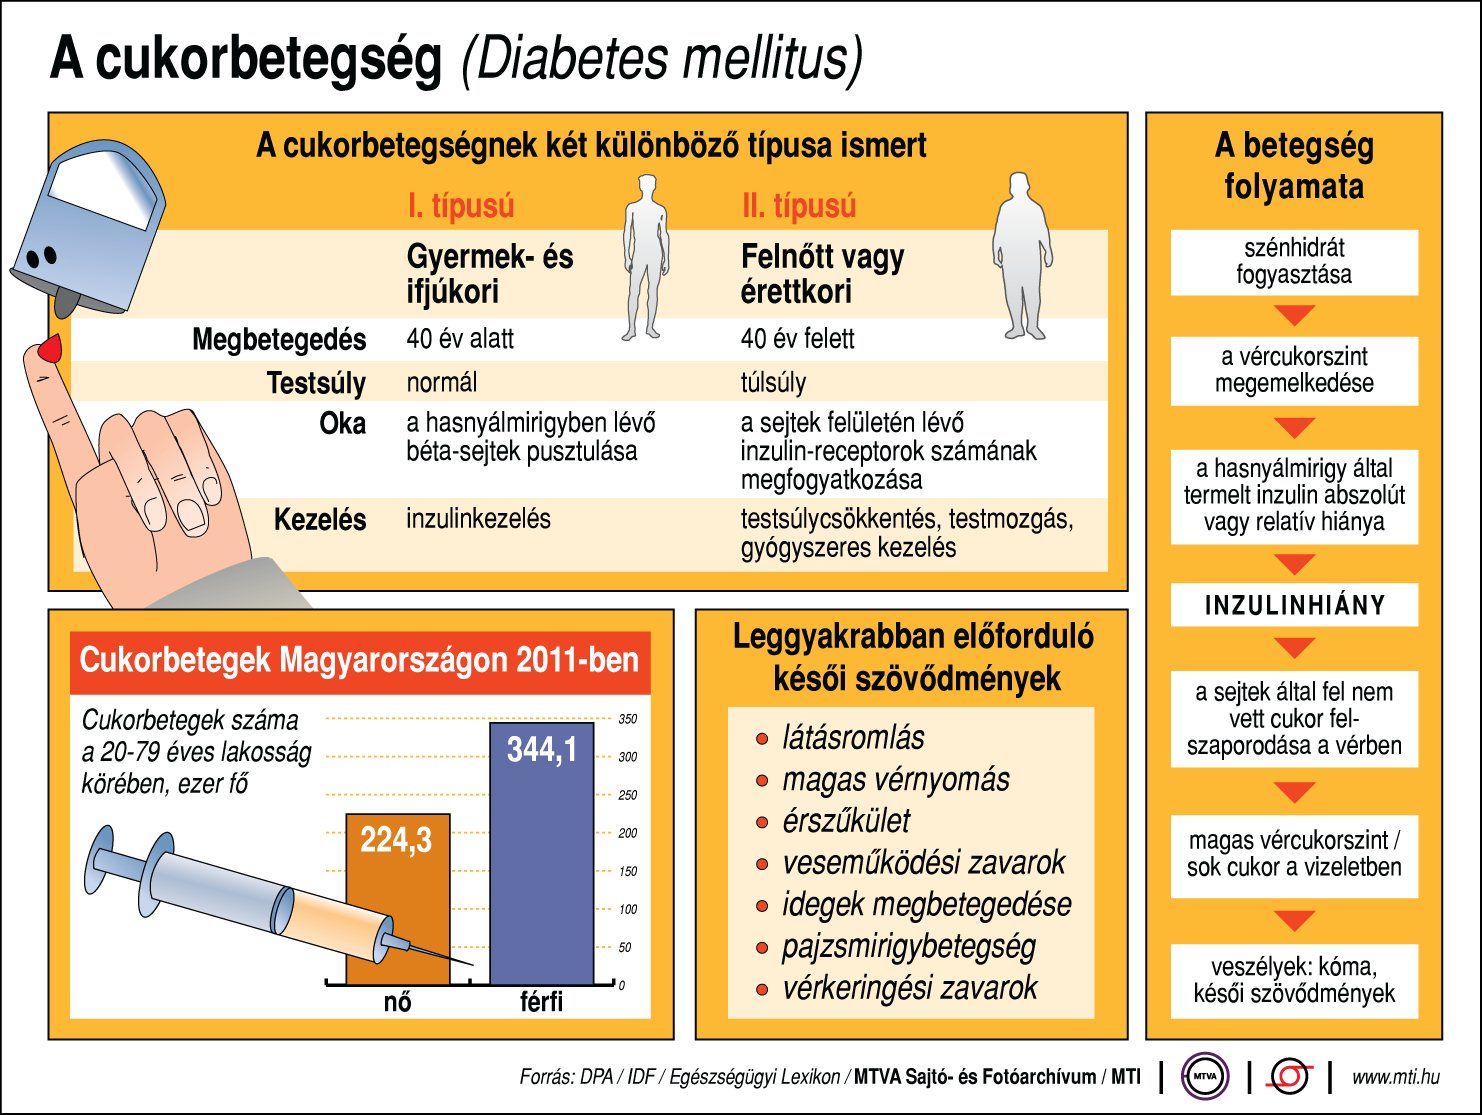 Gyakran kezelik rosszul a magas vérnyomást | Csalábalagold.hu